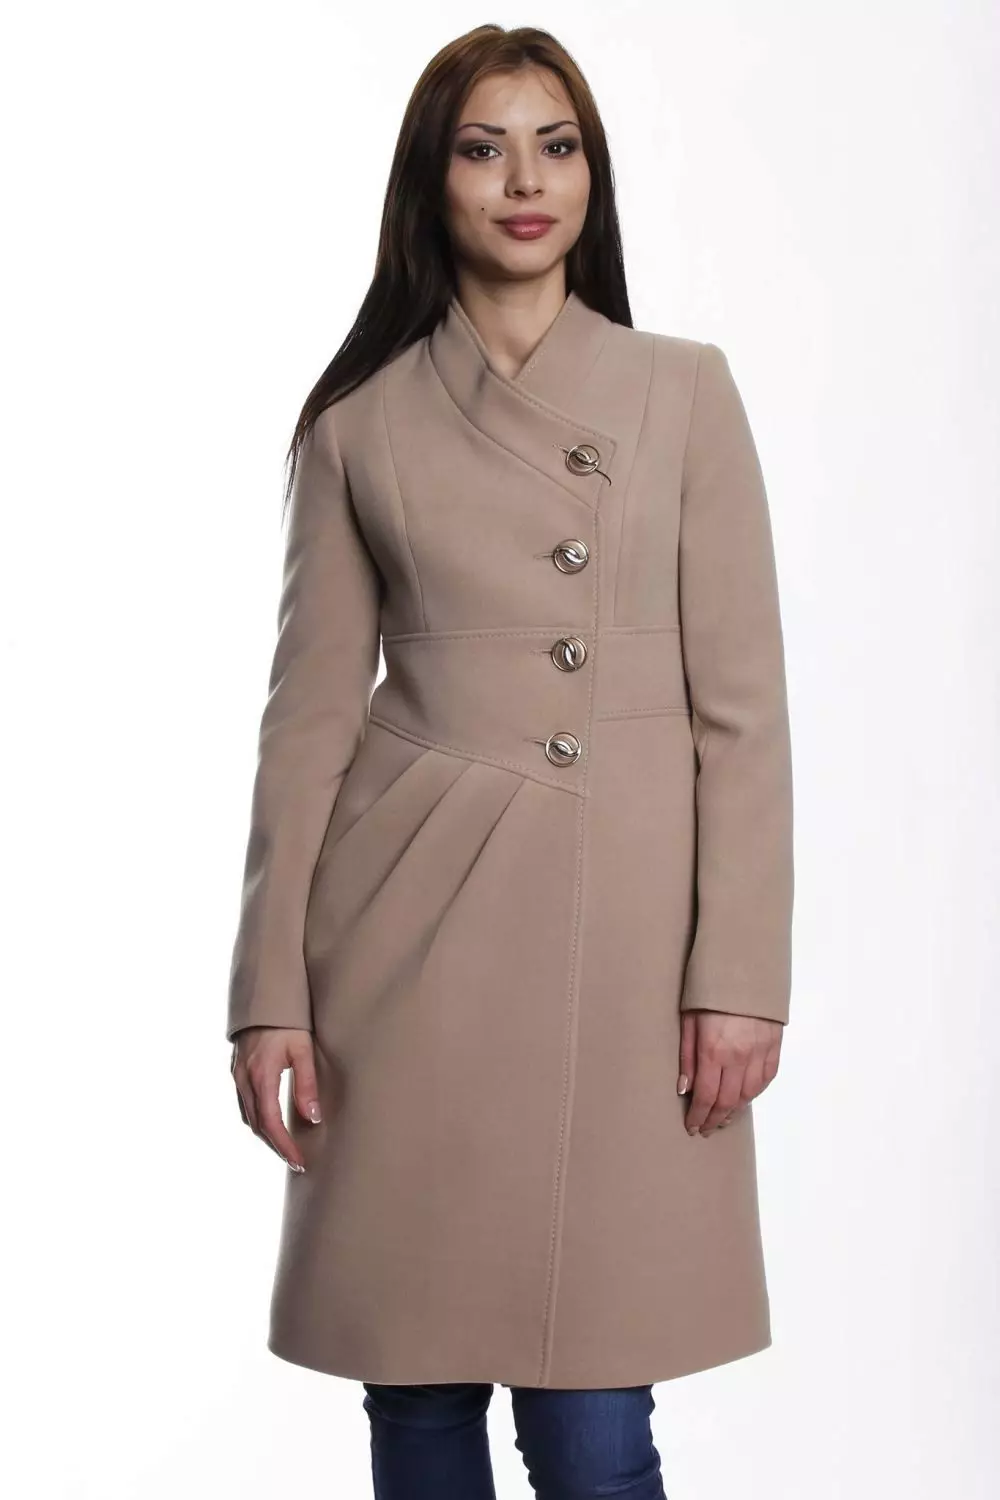 Жіночі пальто весна 2021 (356 фото): від російських виробників, моделі, стилі і фасони, стьобані, короткі, драпові, шкіряні 623_206